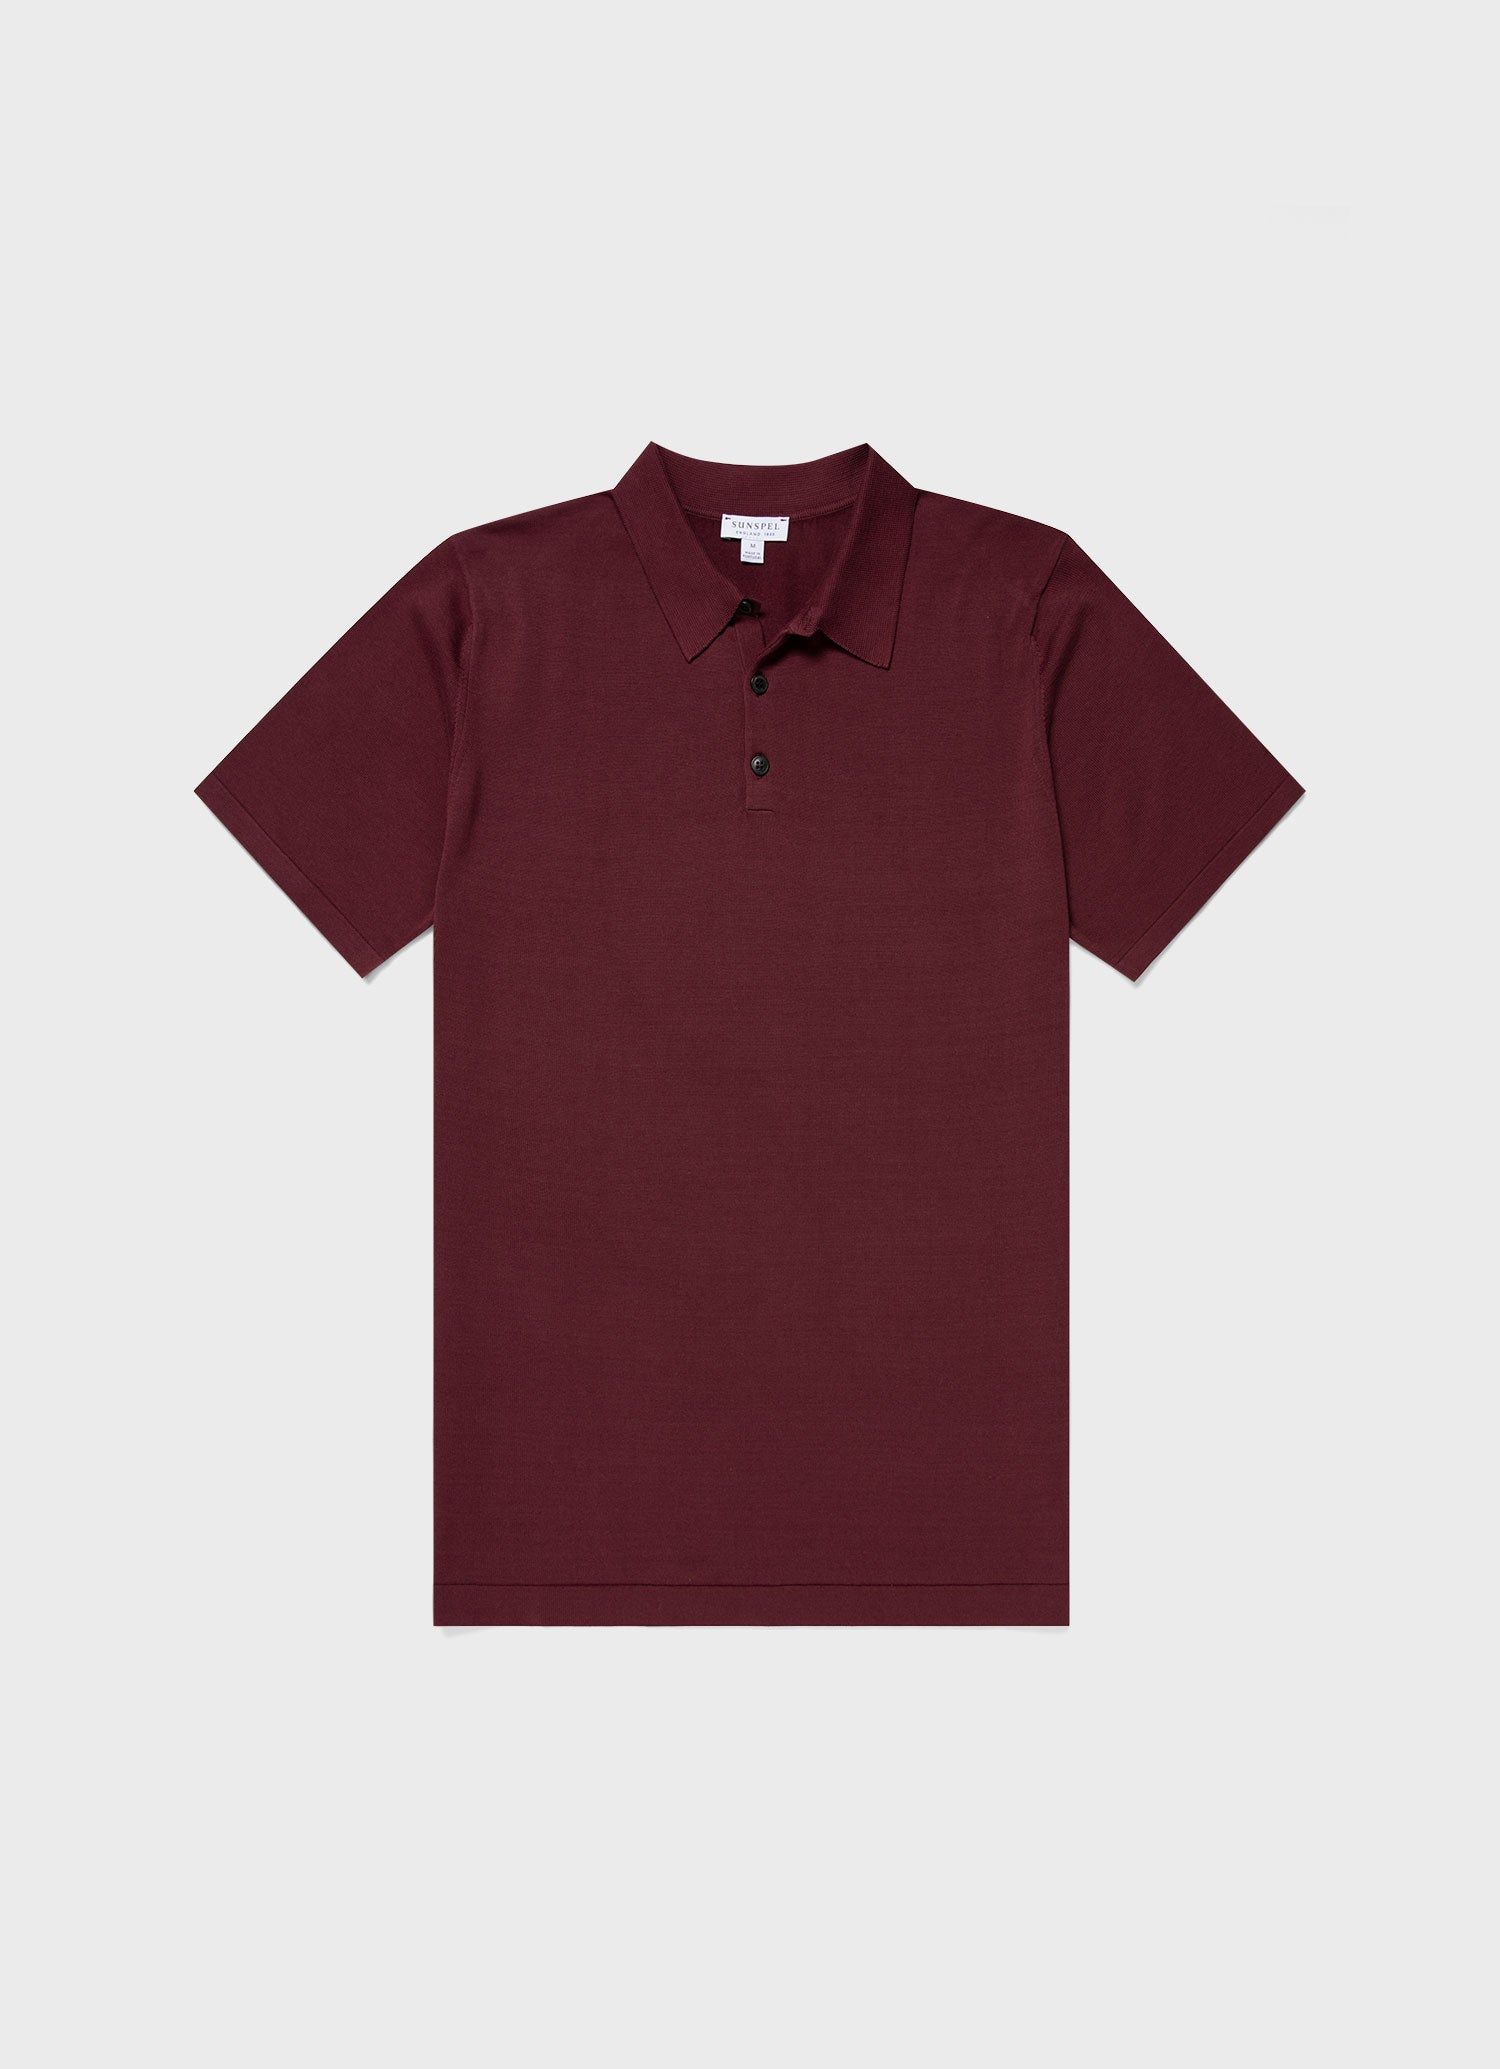 Men's Sea Island Cotton Polo Shirt in Vino